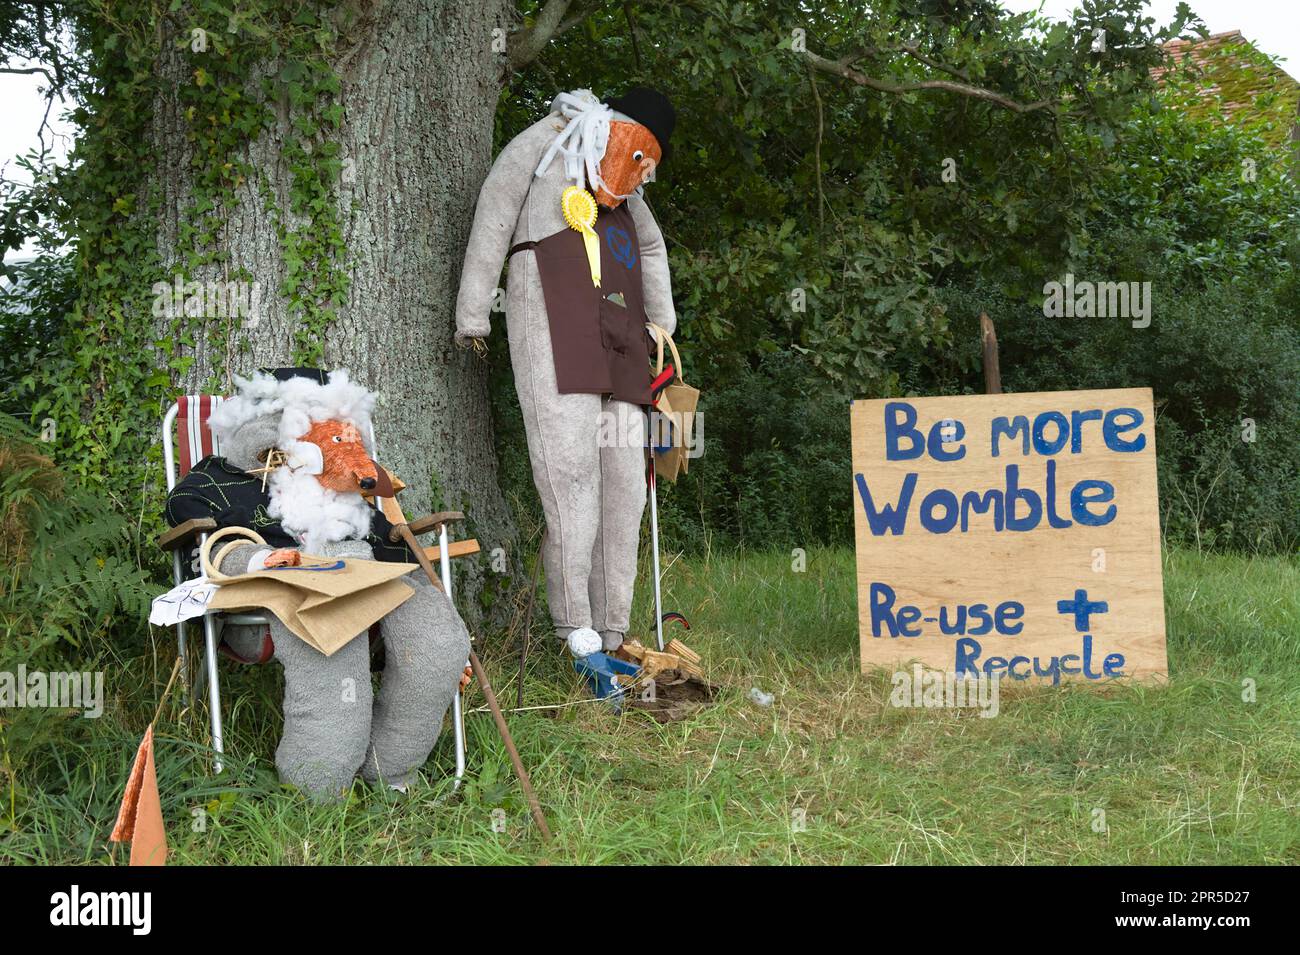 Les épouvantails habillés comme les Wombles avec Un message de recyclage, de réutilisation, une partie du festival annuel de Scarecrow de Bisterne, Ringwood, Angleterre Royaume-Uni Banque D'Images